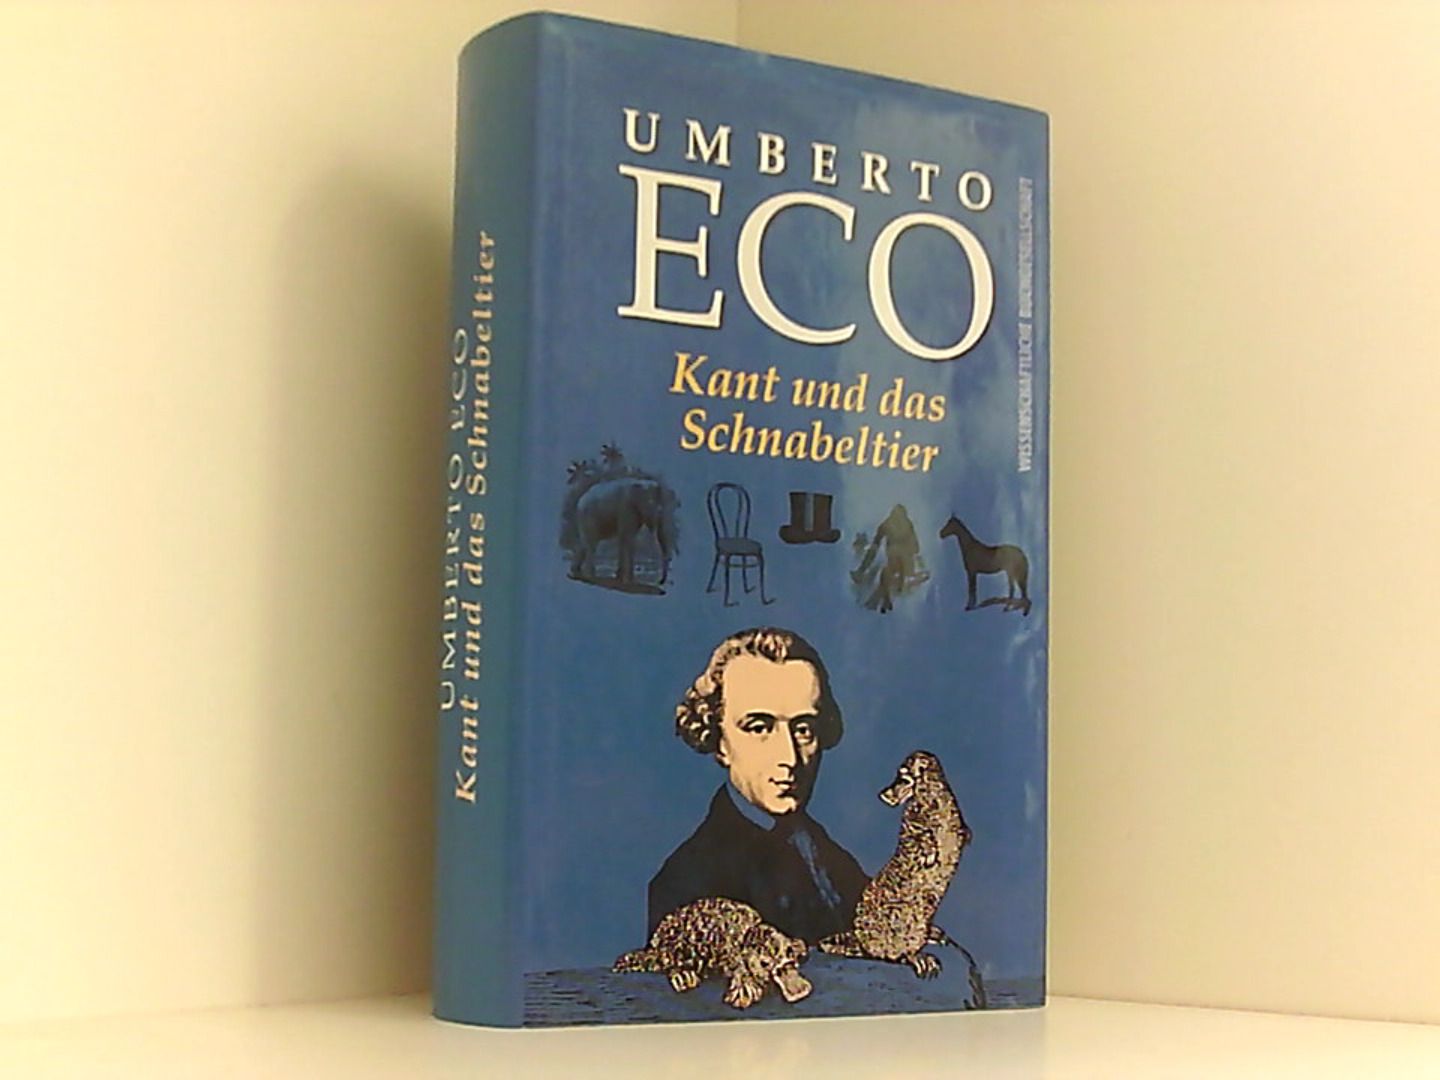 Kant und das Schnabeltier, Aus dem Italienischen von Frank Herrmann - Eco, Umberto